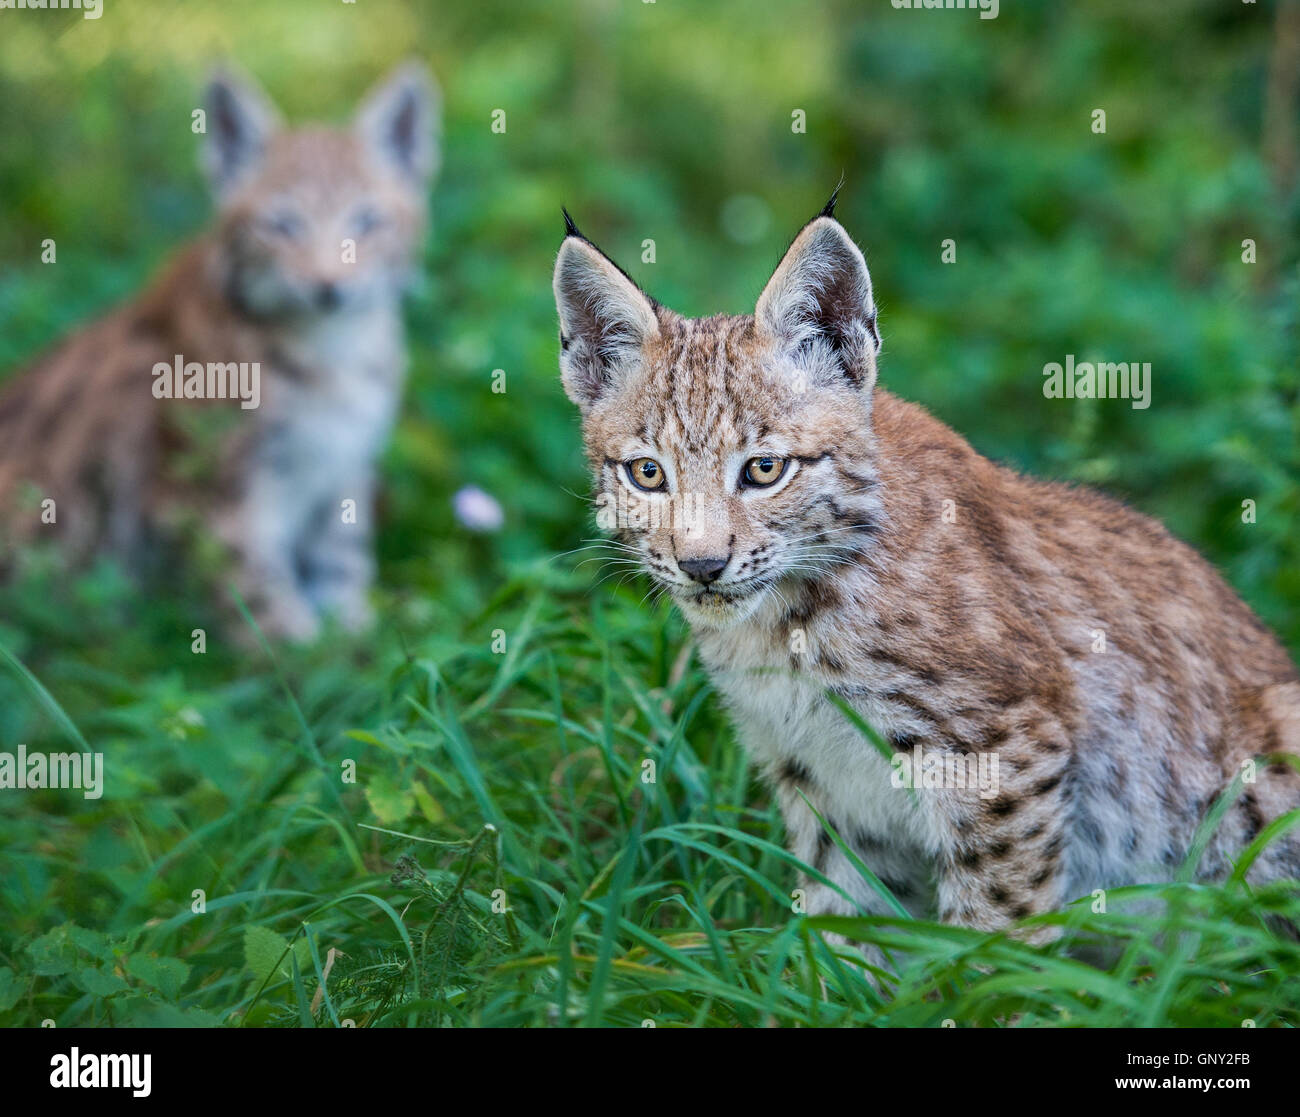 Schoenebeck brut, de l'Allemagne. Du 1er septembre 2016. Un jeune lynx (Lynx lynx) dans un enclos au parc Schorfheide brut en Allemagne, Schoenebeck, 1 septembre 2016. Deux jeunes lynx sont nés à peu près il y a deux mois et demi. Le parc nord de Berlin est habitée par des animaux et certains qui sont probablement éteintes dans la nature. PHOTO : PATRICK PLEUL/dpa/Alamy Live News Banque D'Images